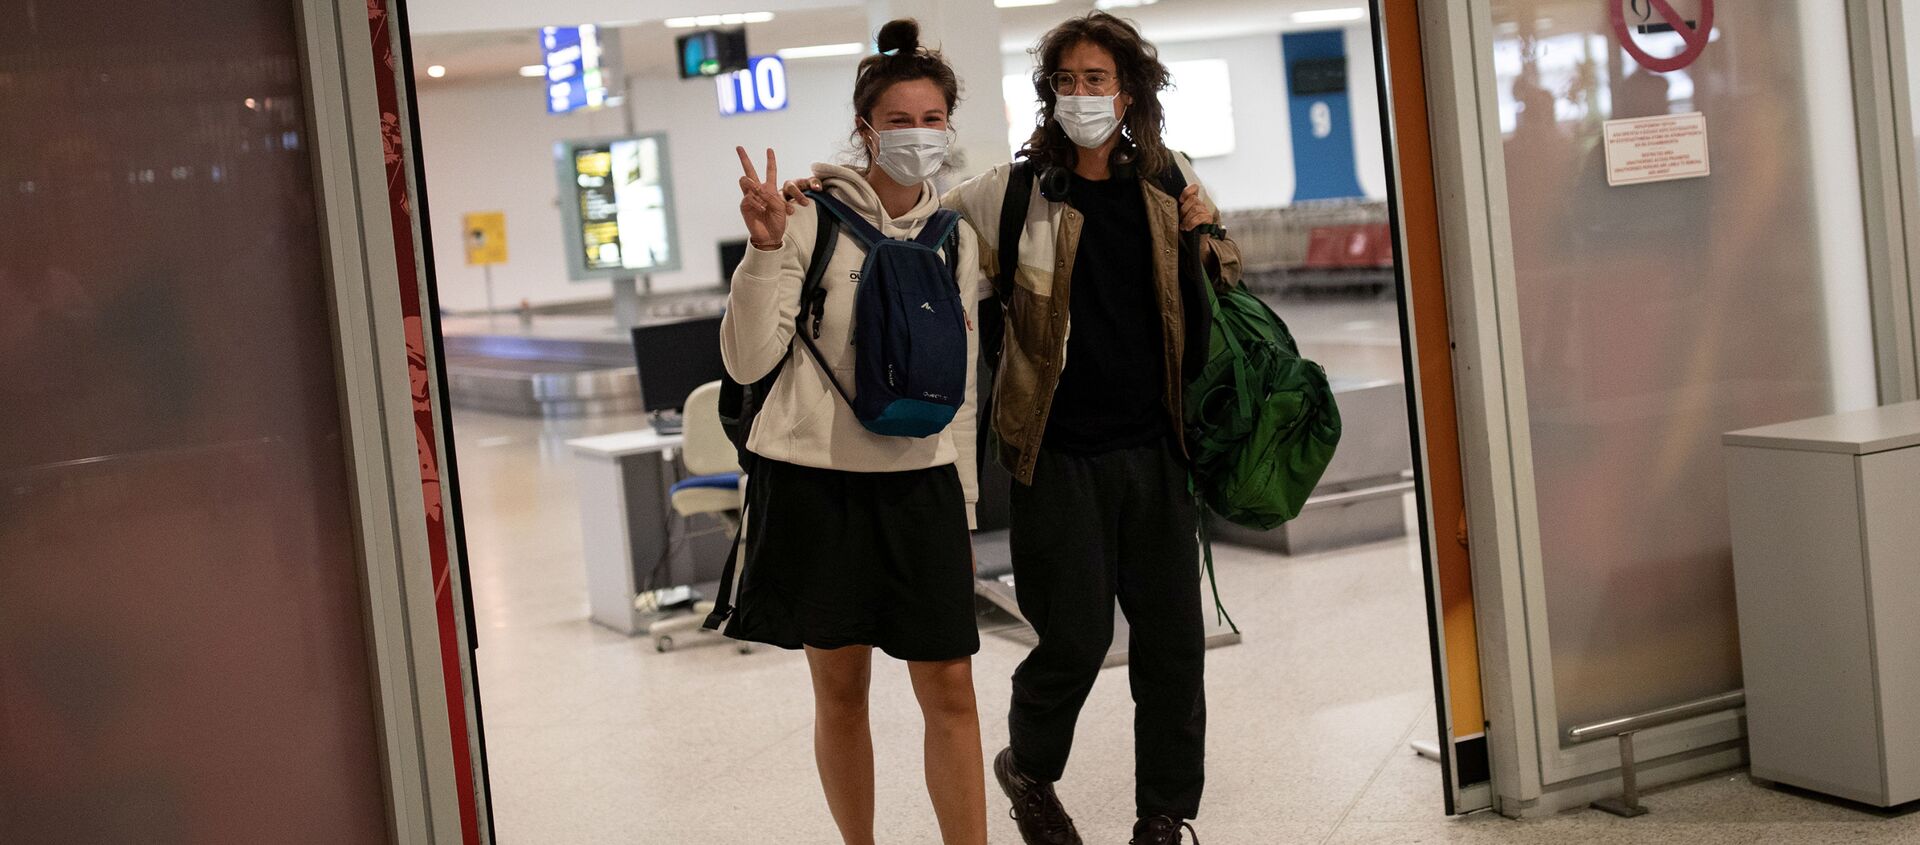  Пассажиры рейса из Амстердама в защитных масках прибывают в международный аэропорт в Афинах, Греция - Sputnik Таджикистан, 1920, 21.03.2021